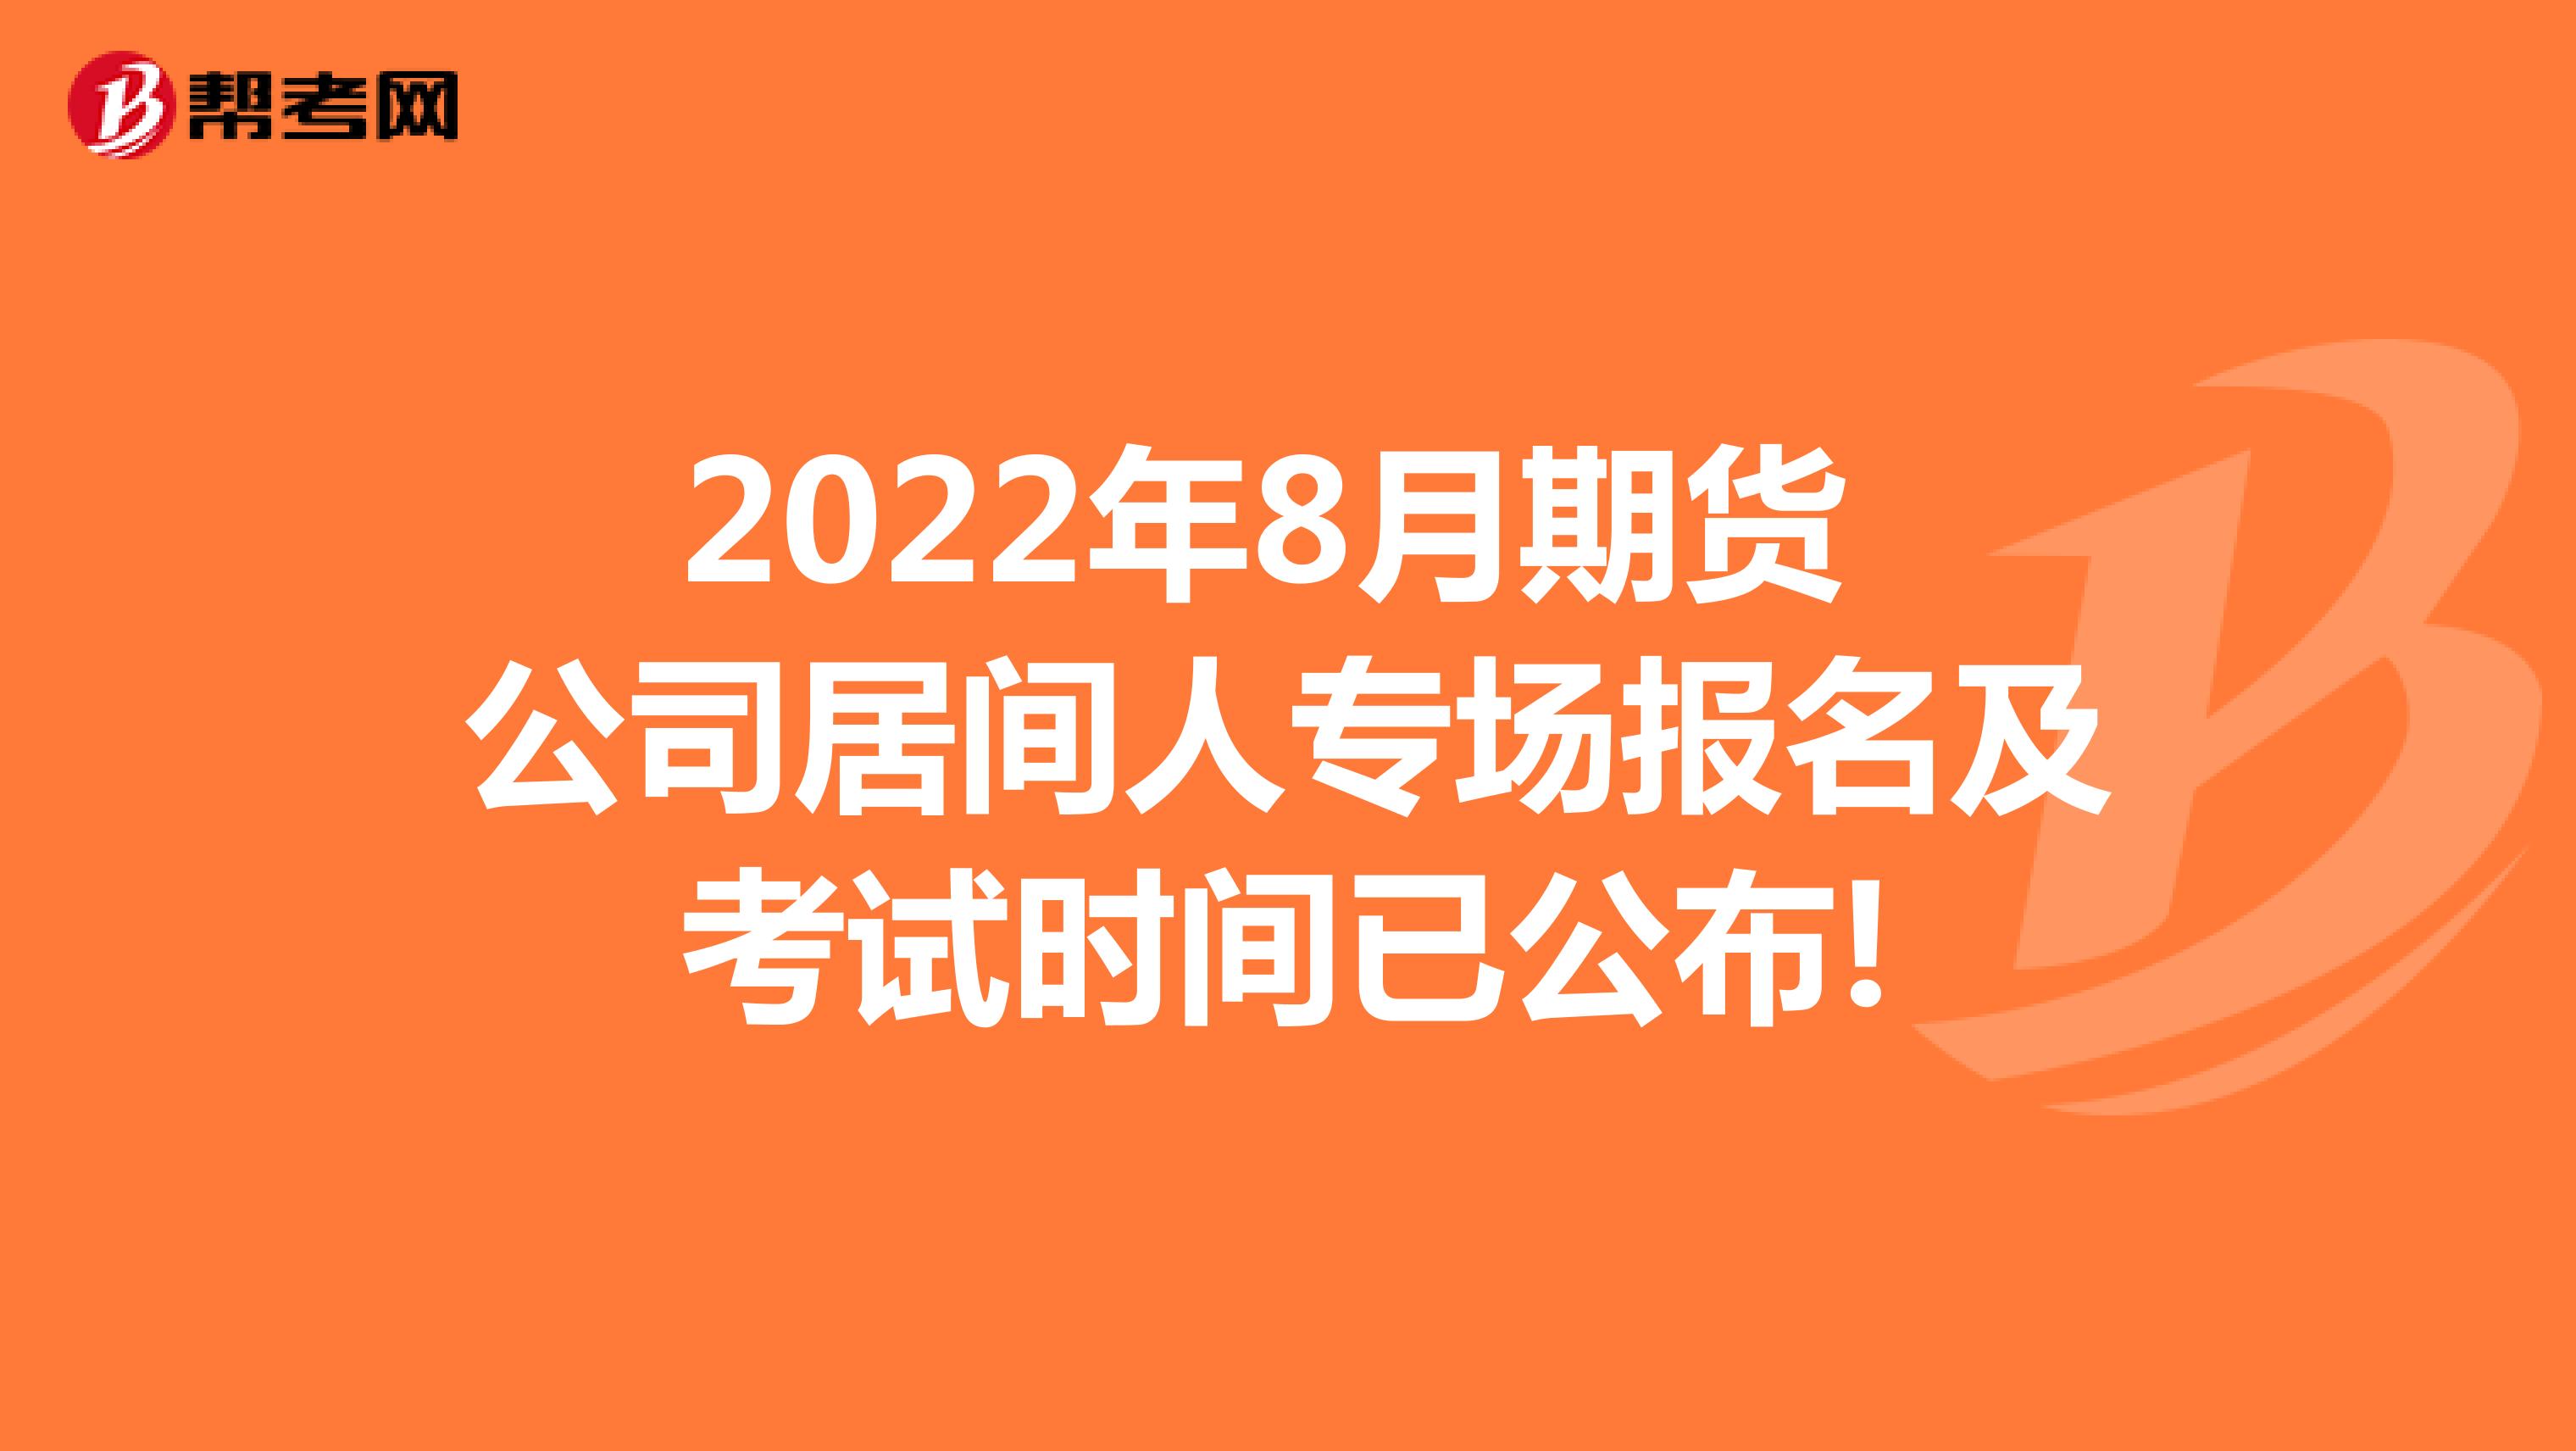 2022年8月期货公司居间人专场报名及考试时间已公布!